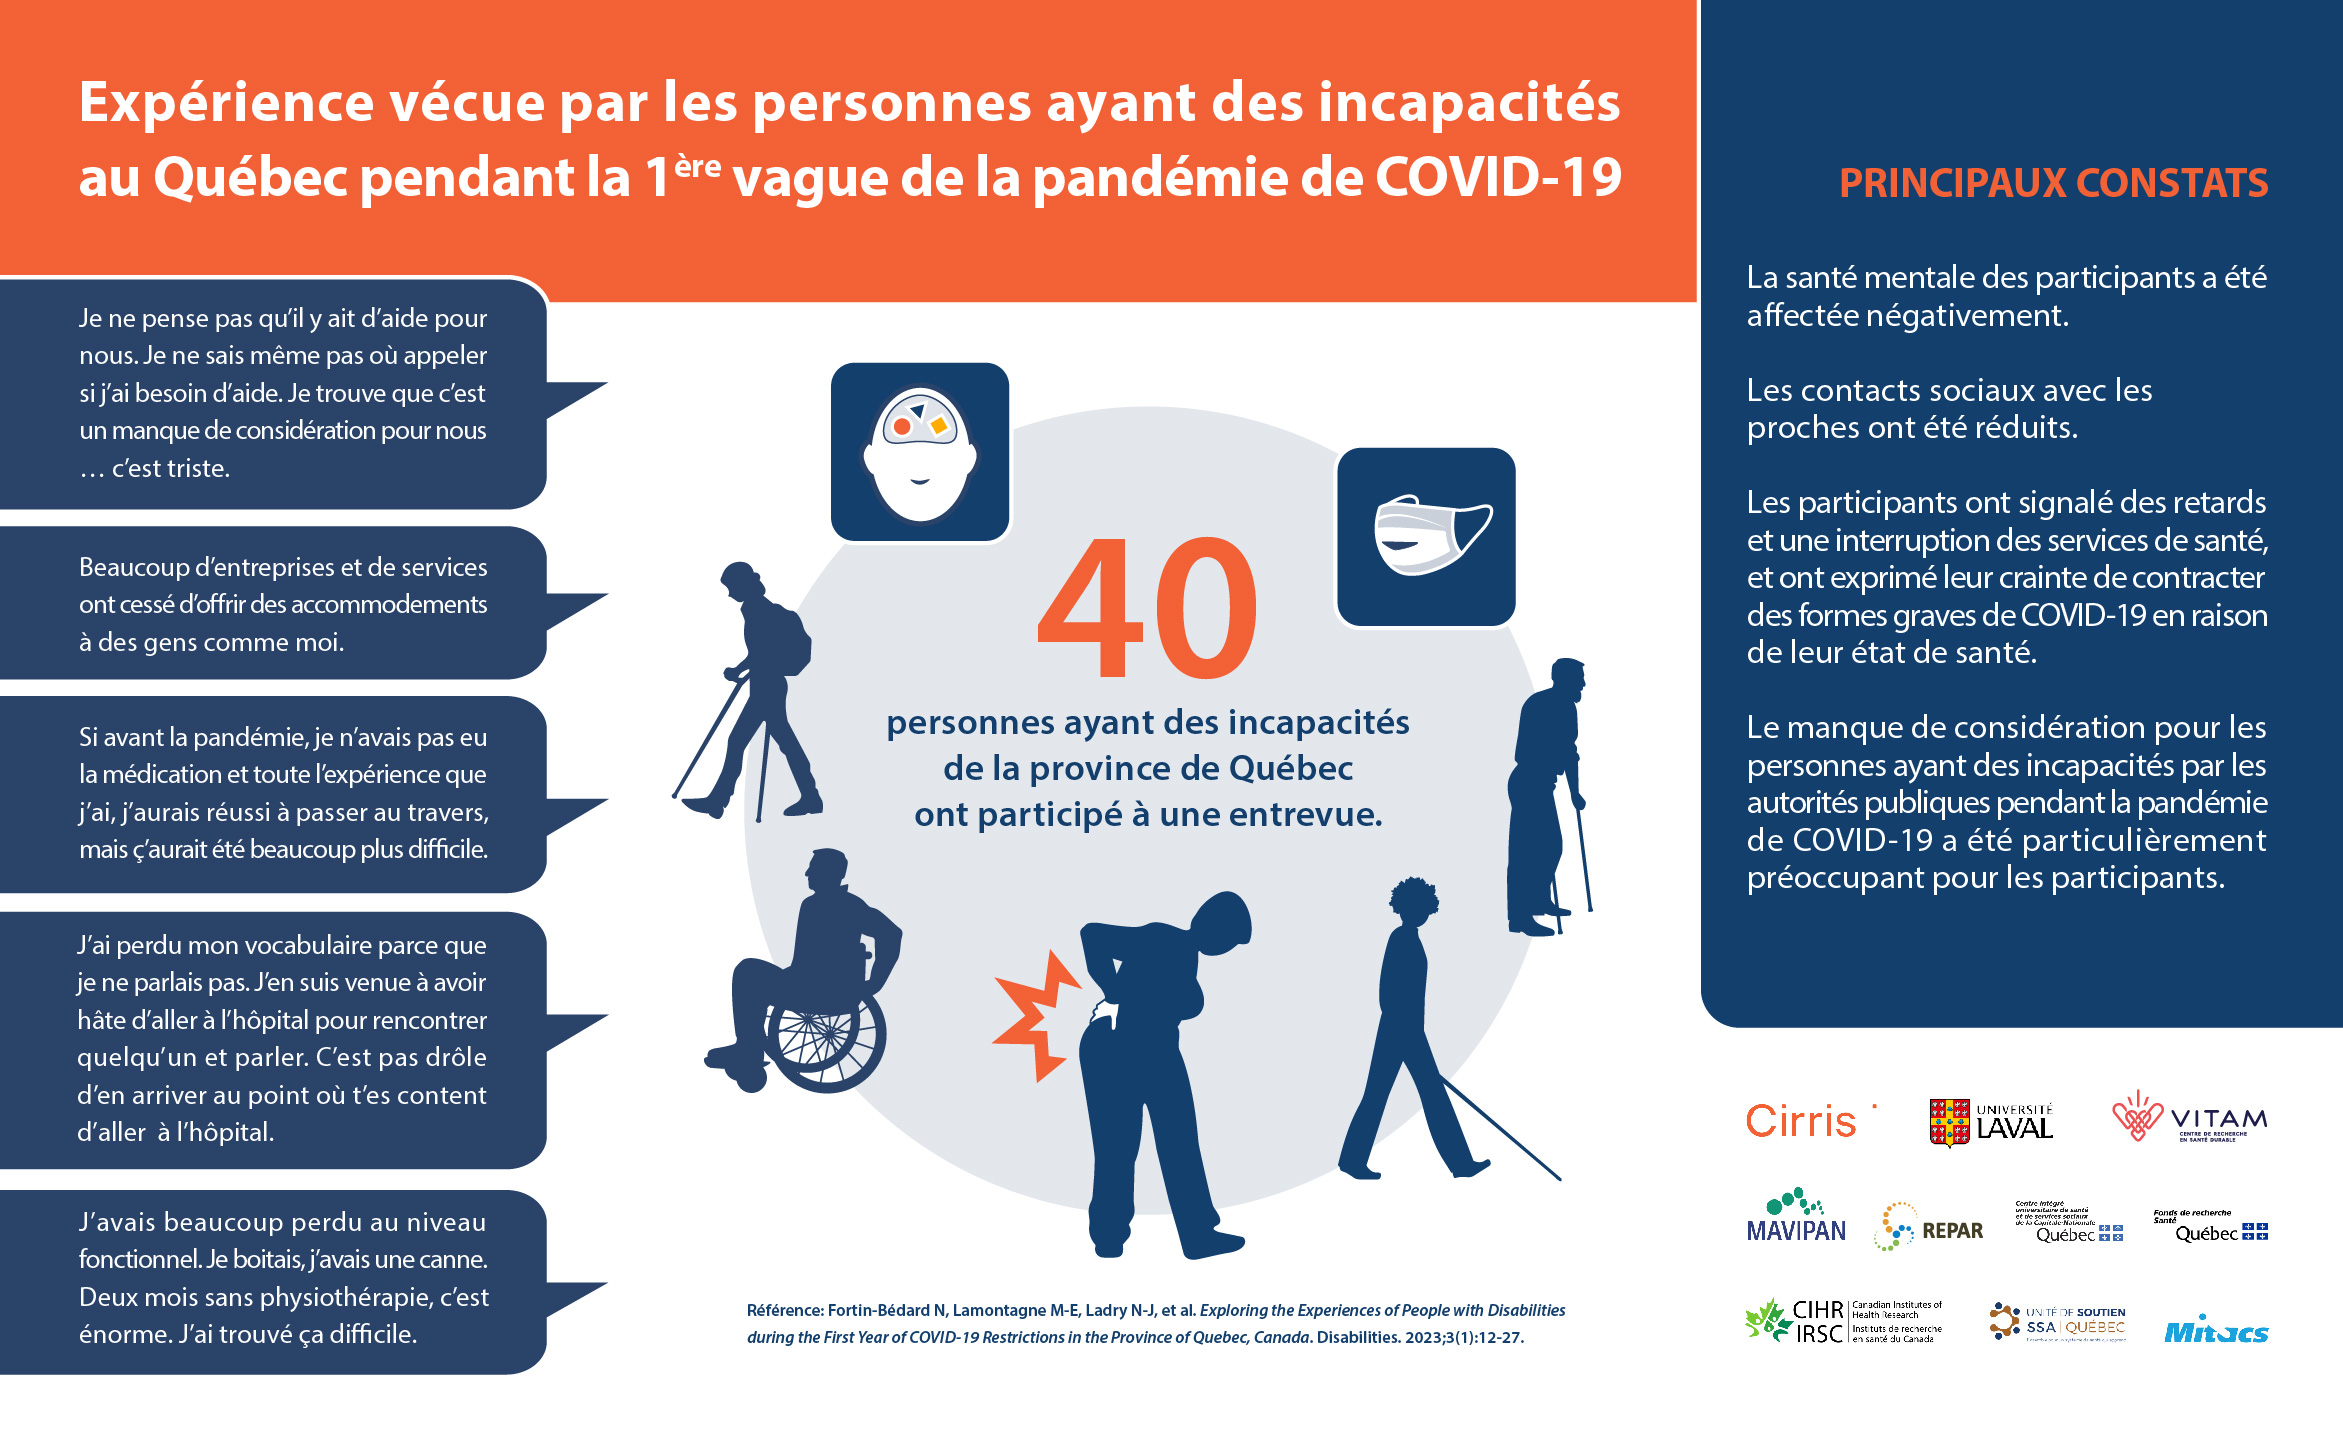 Infographie - Expérience vécue par les personnes ayant des incapacités au Québec pendant la première vague de la pandémie de Covid-19